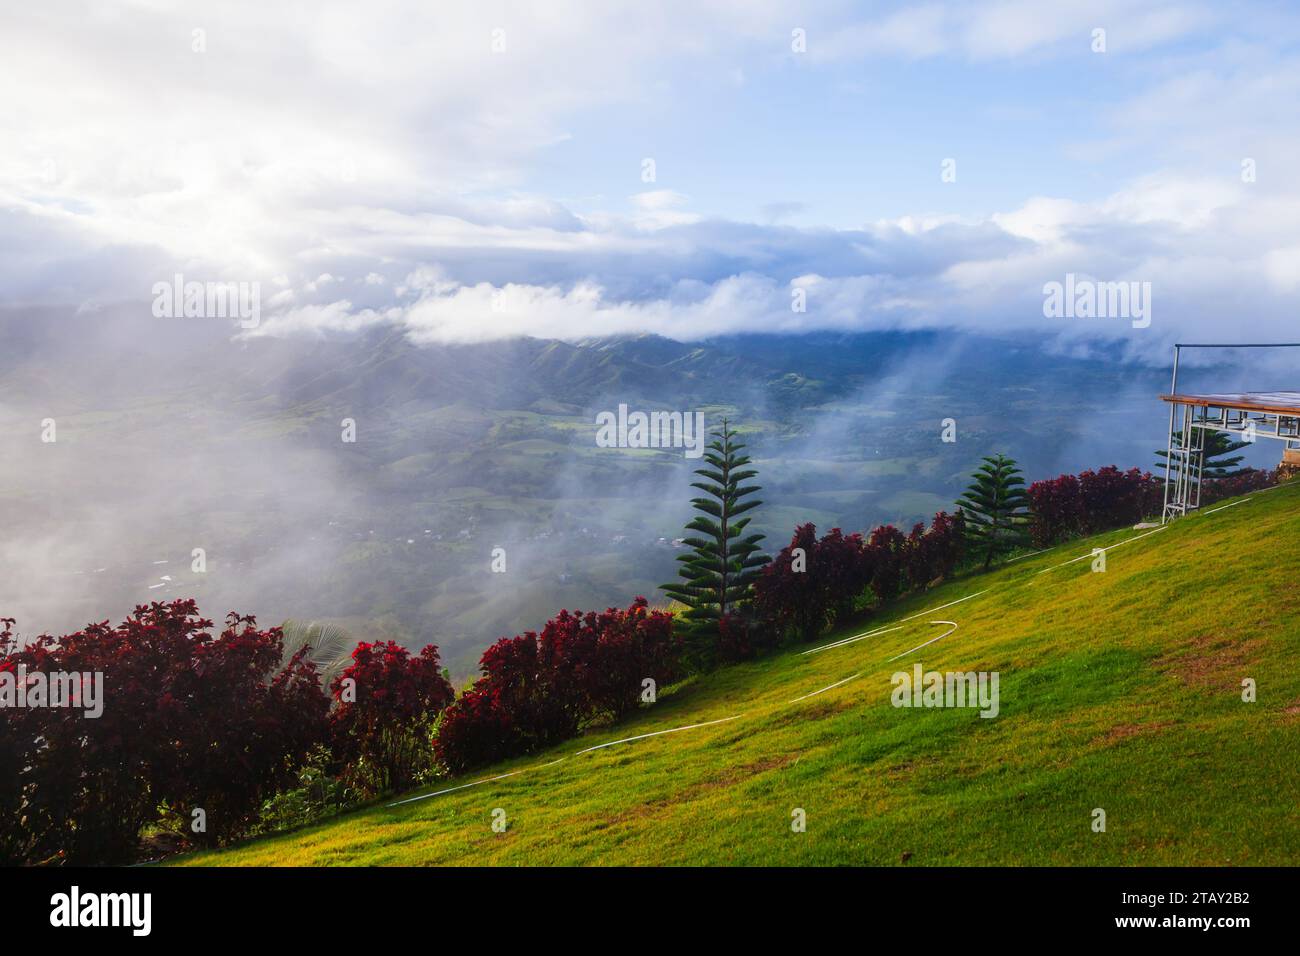 Montana Redonda, République dominicaine. Photo de paysage de montagne prise un matin ensoleillé nuageux Banque D'Images